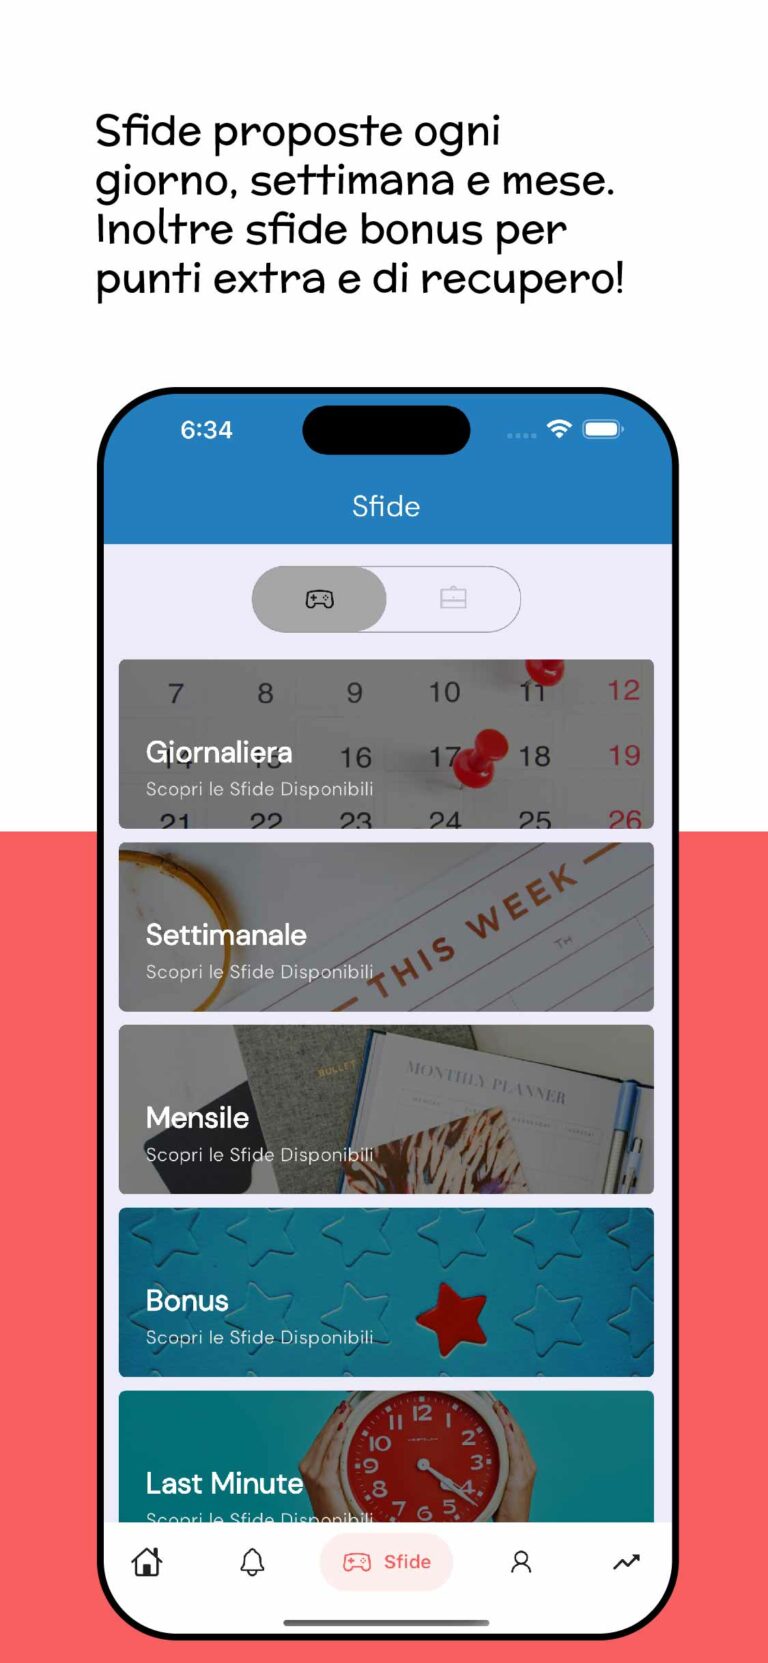 Apple Store: Slide 4 | Screenshot schermata "Sfide" app e scritta descrittiva: "Sfide proposte ogni giorno, settimana e mese"